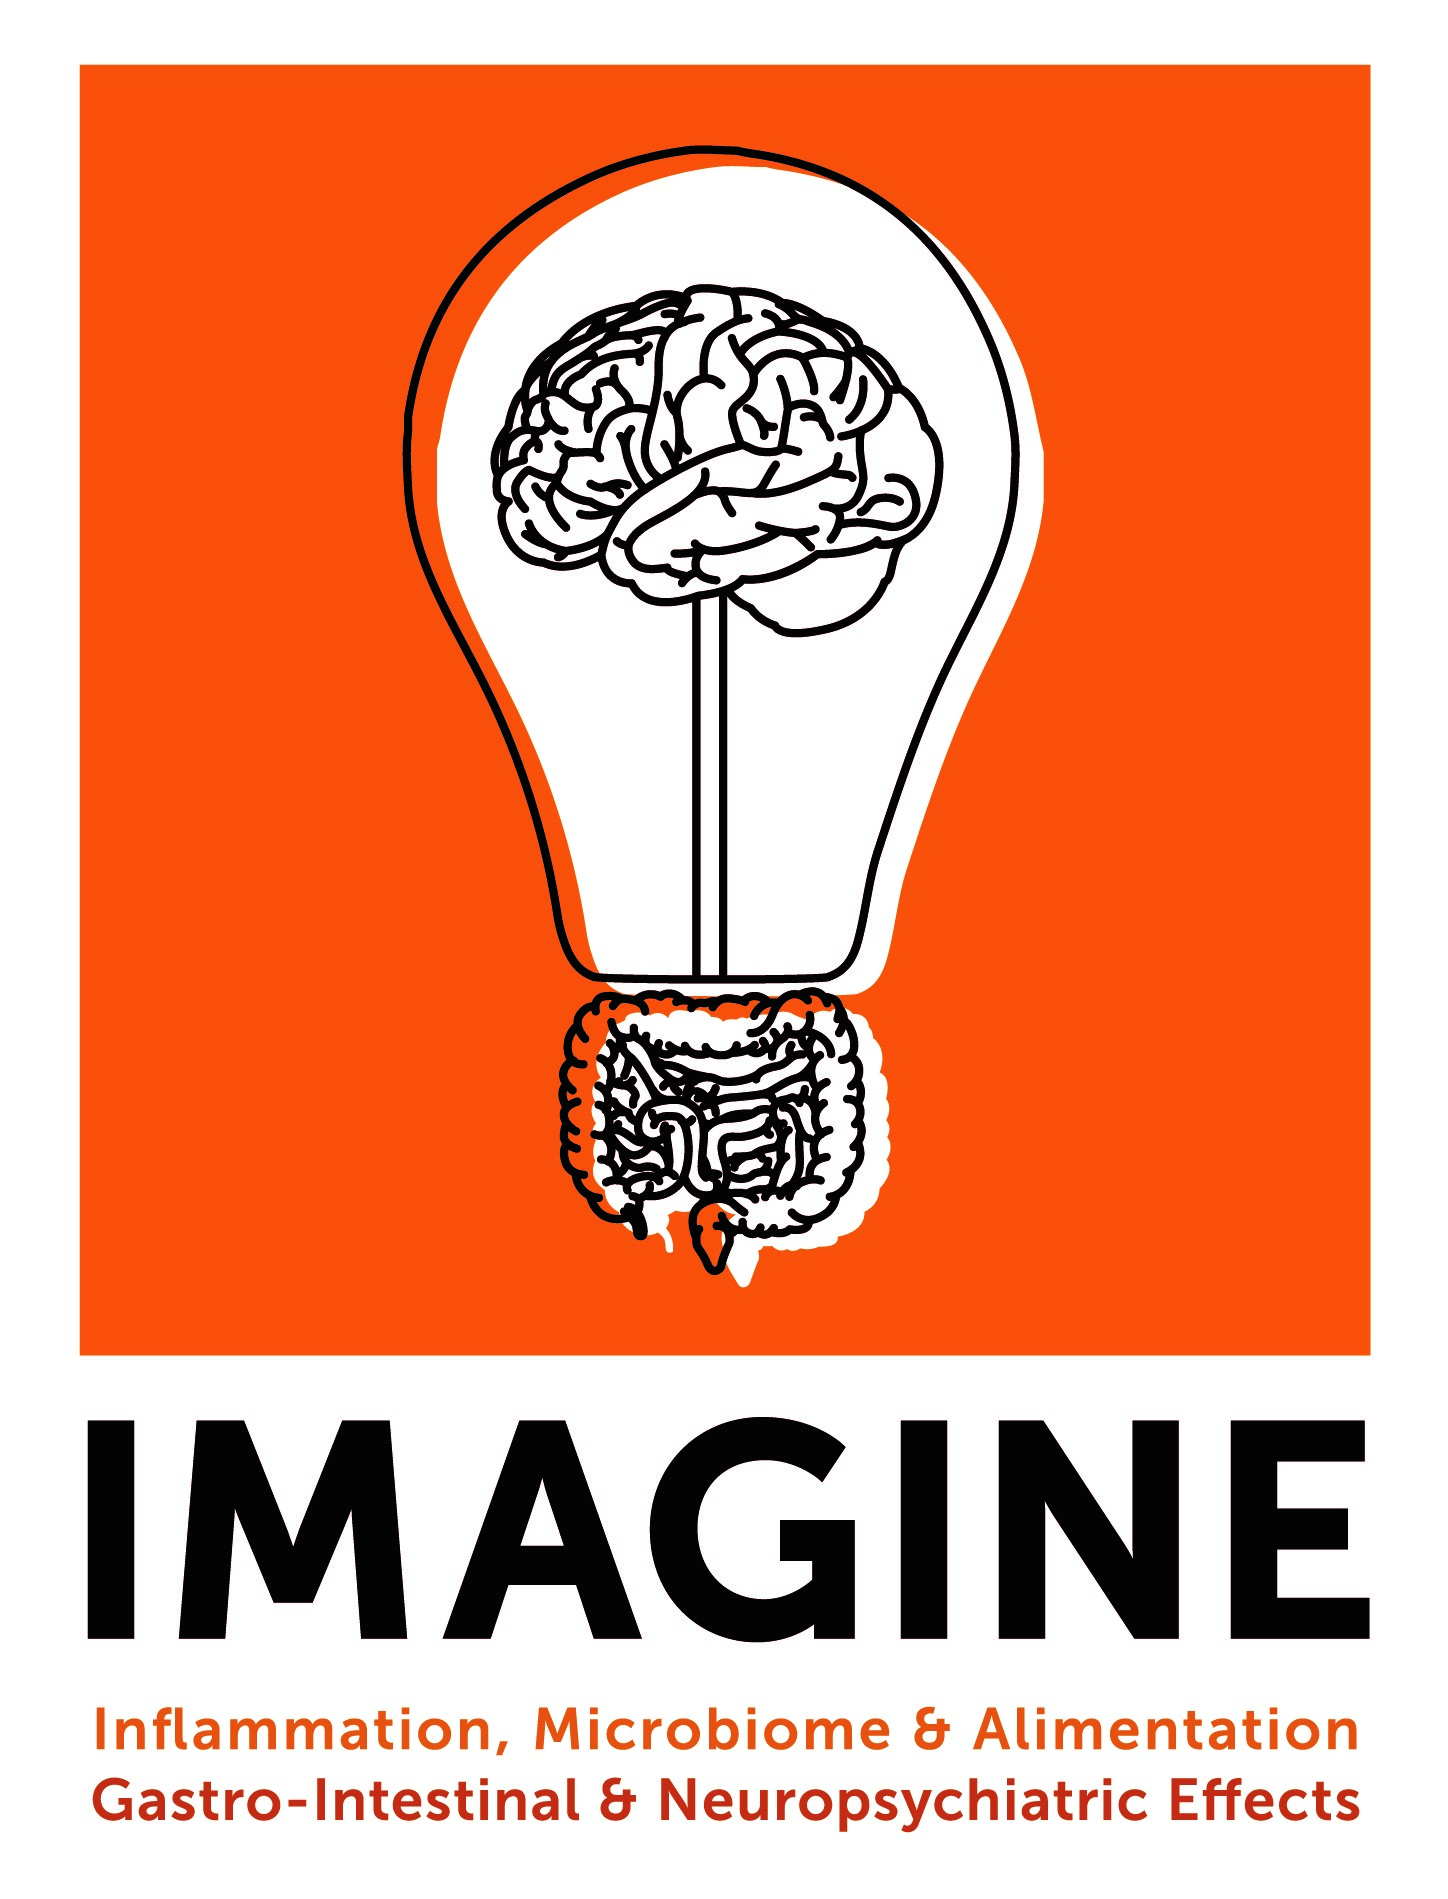 Lightbulb Logo - imagine lightbulb logo